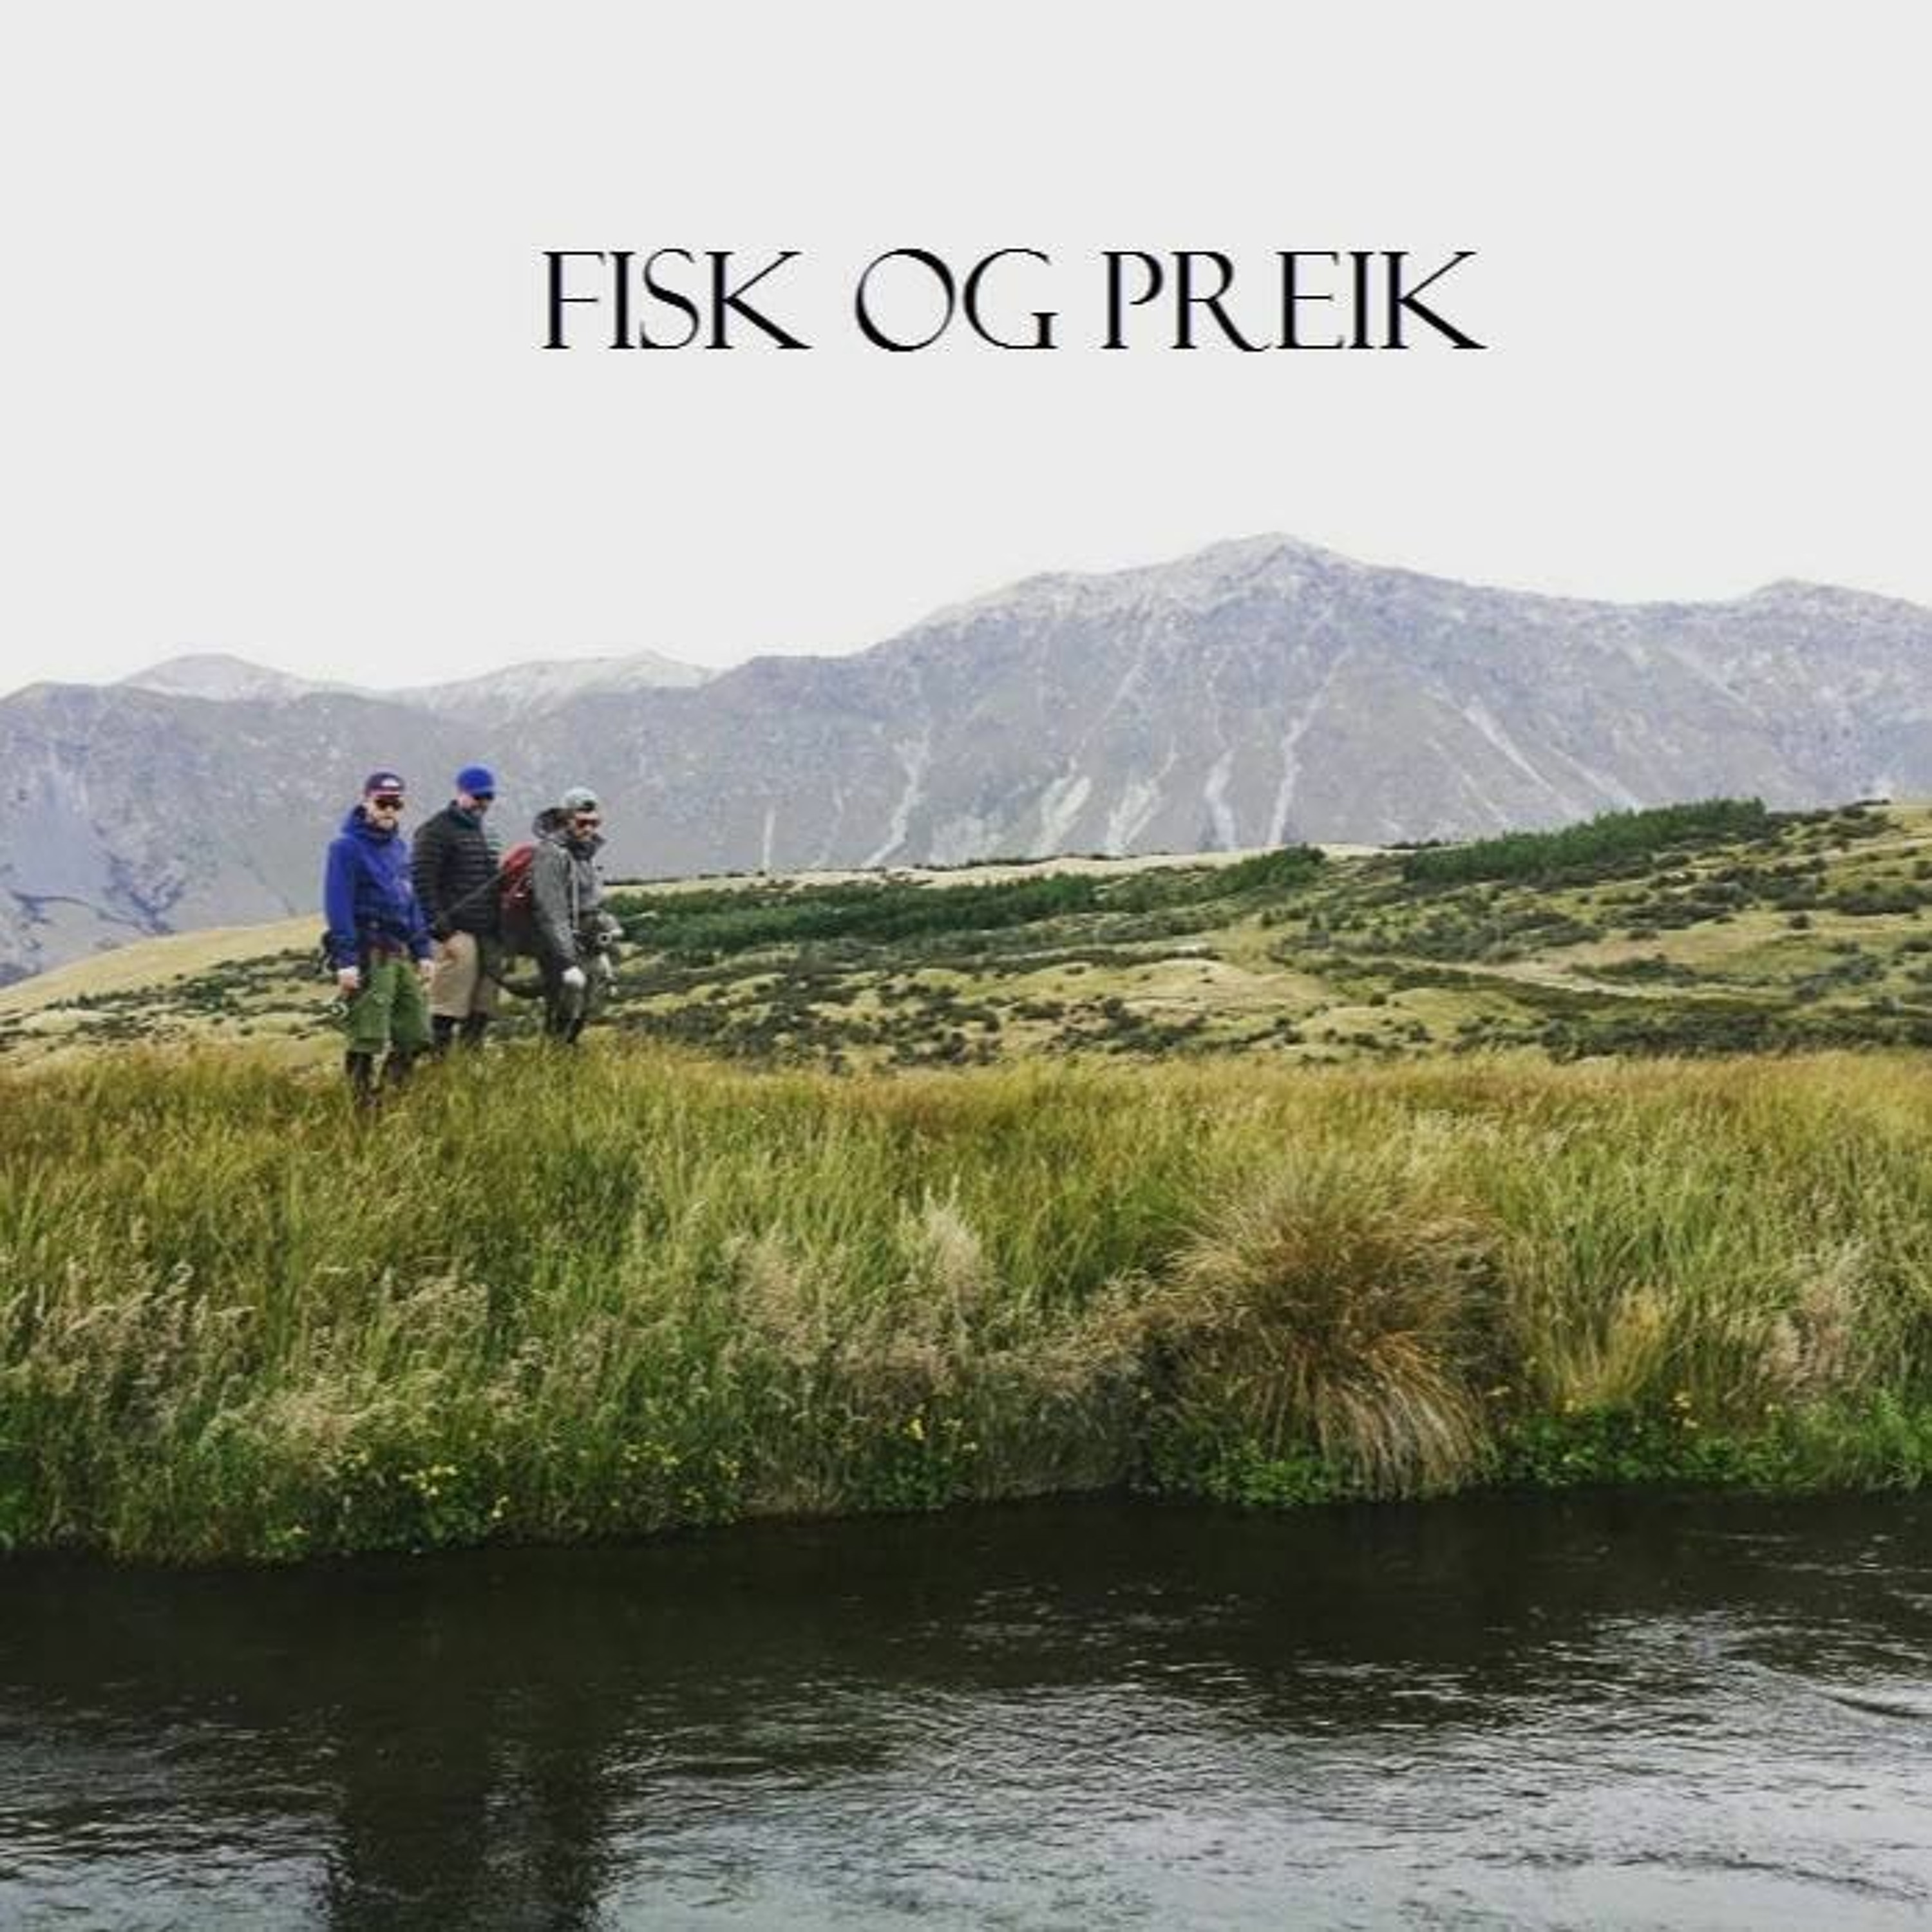 Fisk Og Preik - Episode 35 - Gjest Kai Finbråten